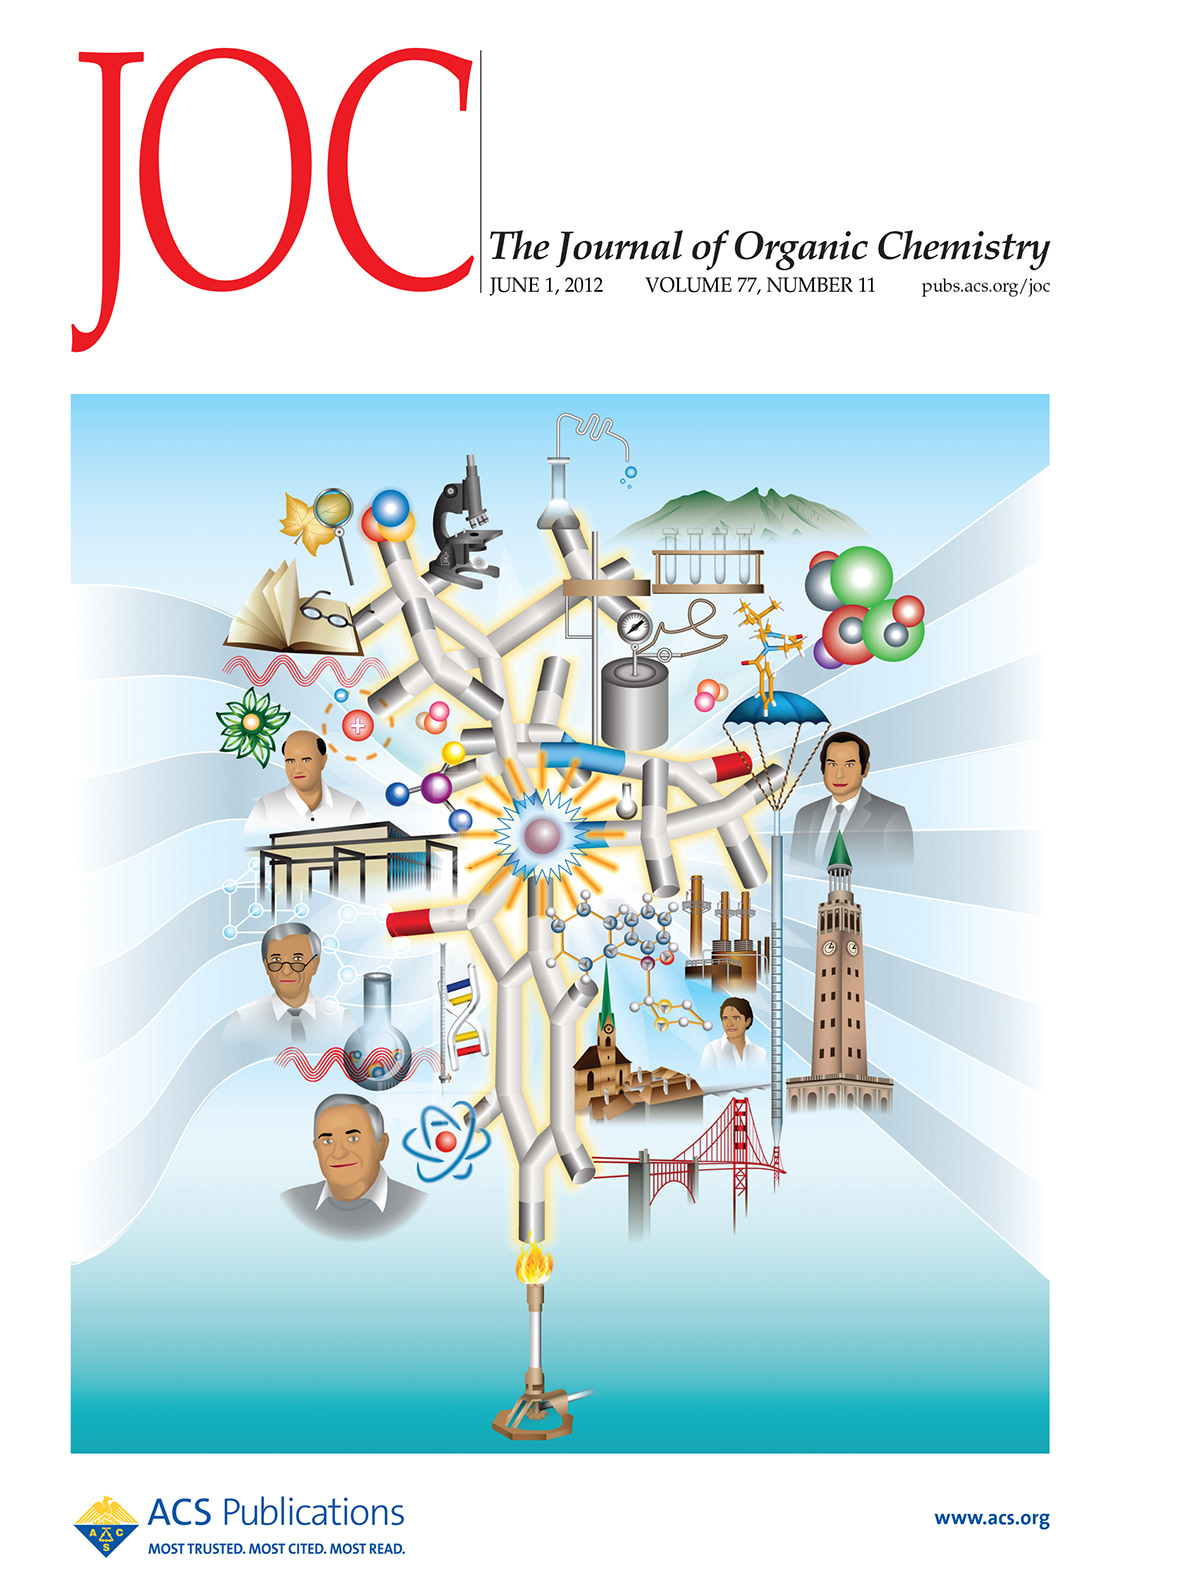 chesmistry  journal organic ilustration  vector san francisco Zurich  Golden Gate molecule scientific atom formula monterrey